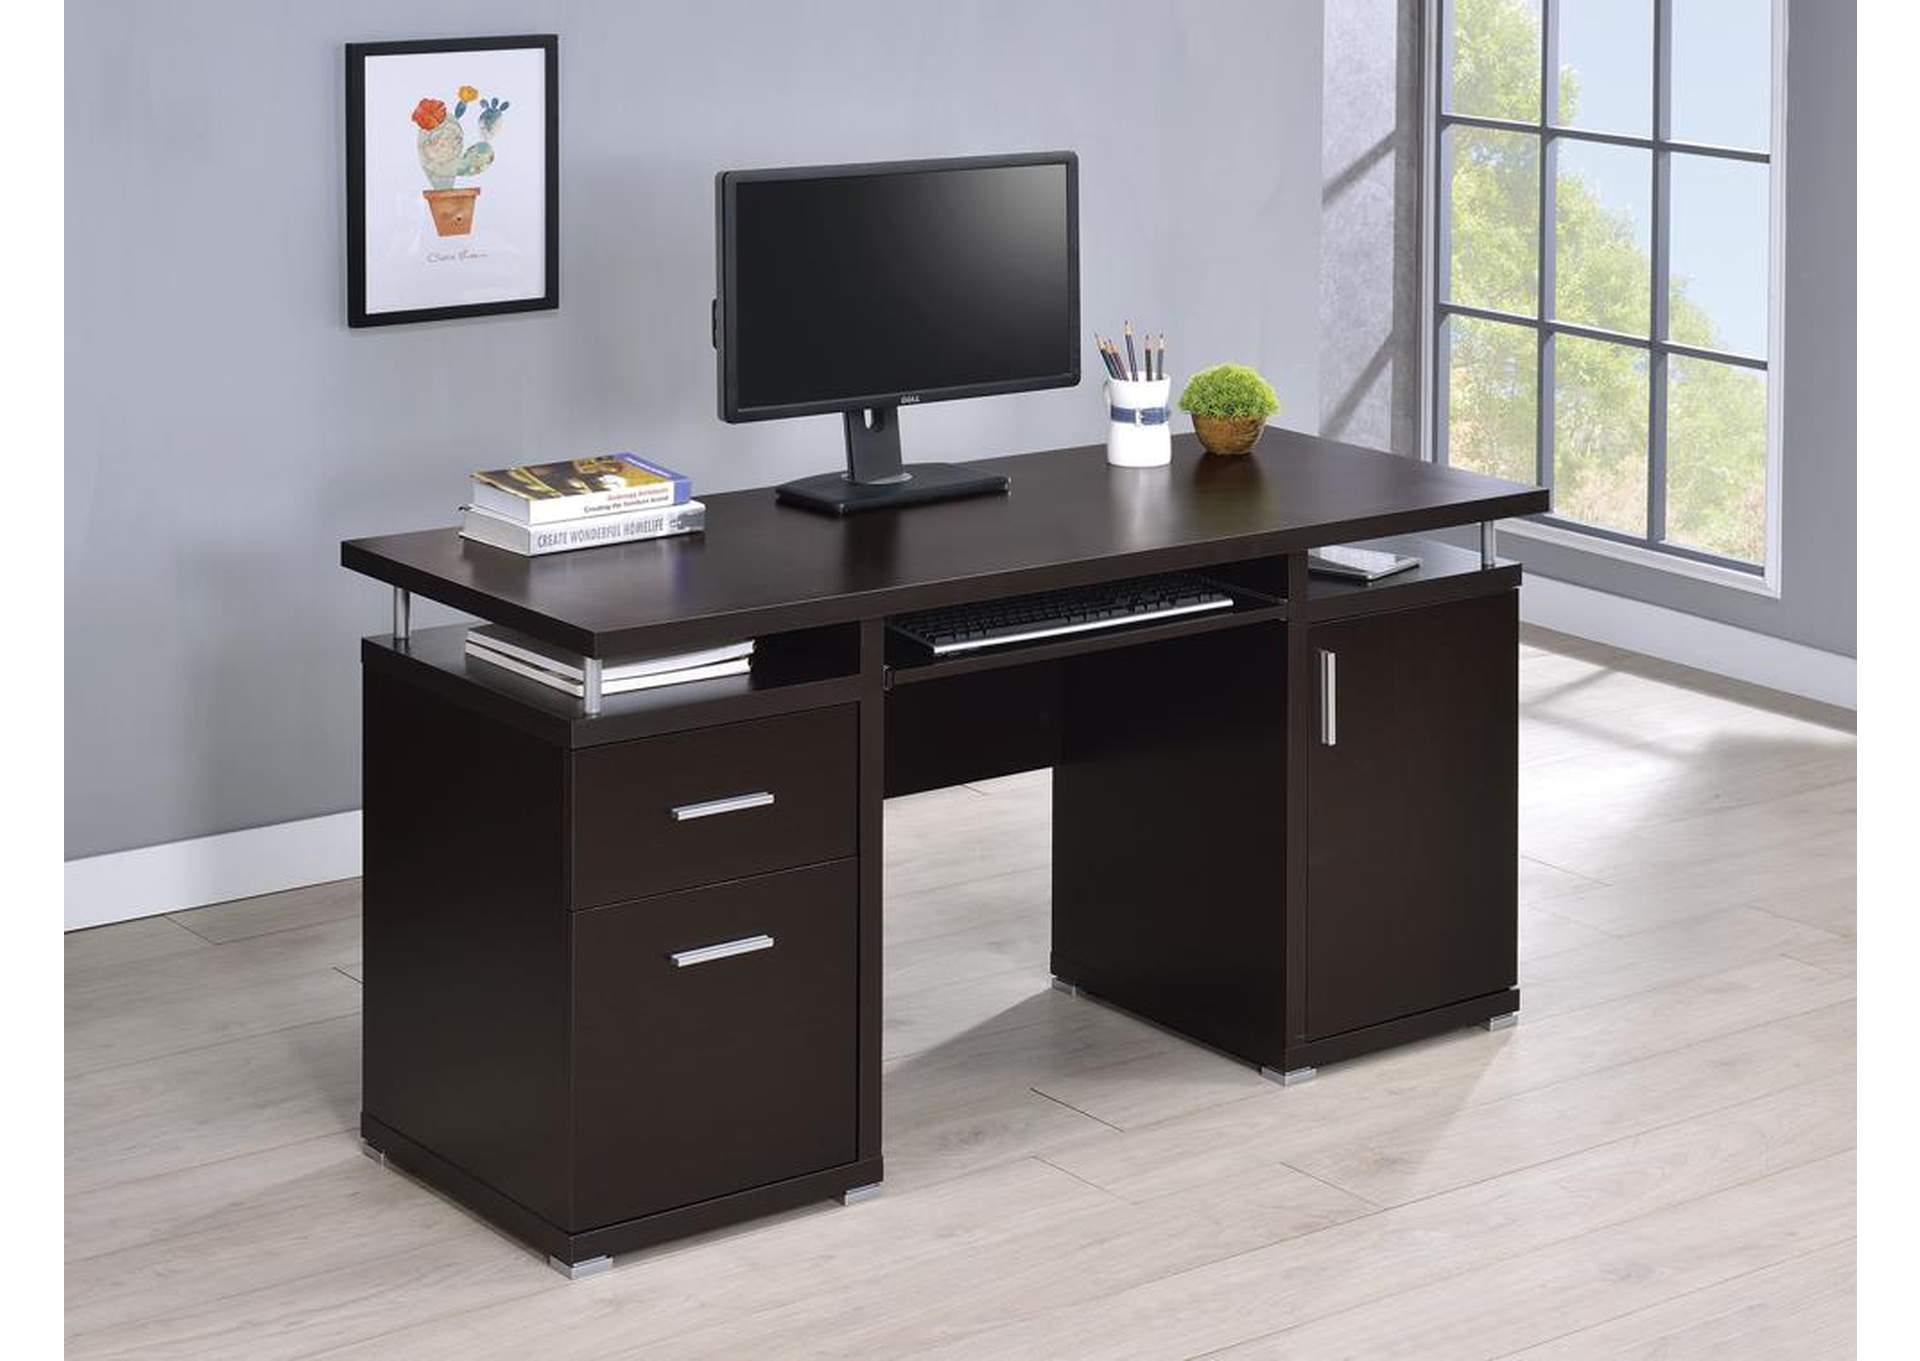 Direct Buy Furniture Philadelphia Pa Cappuccino Computer Desk